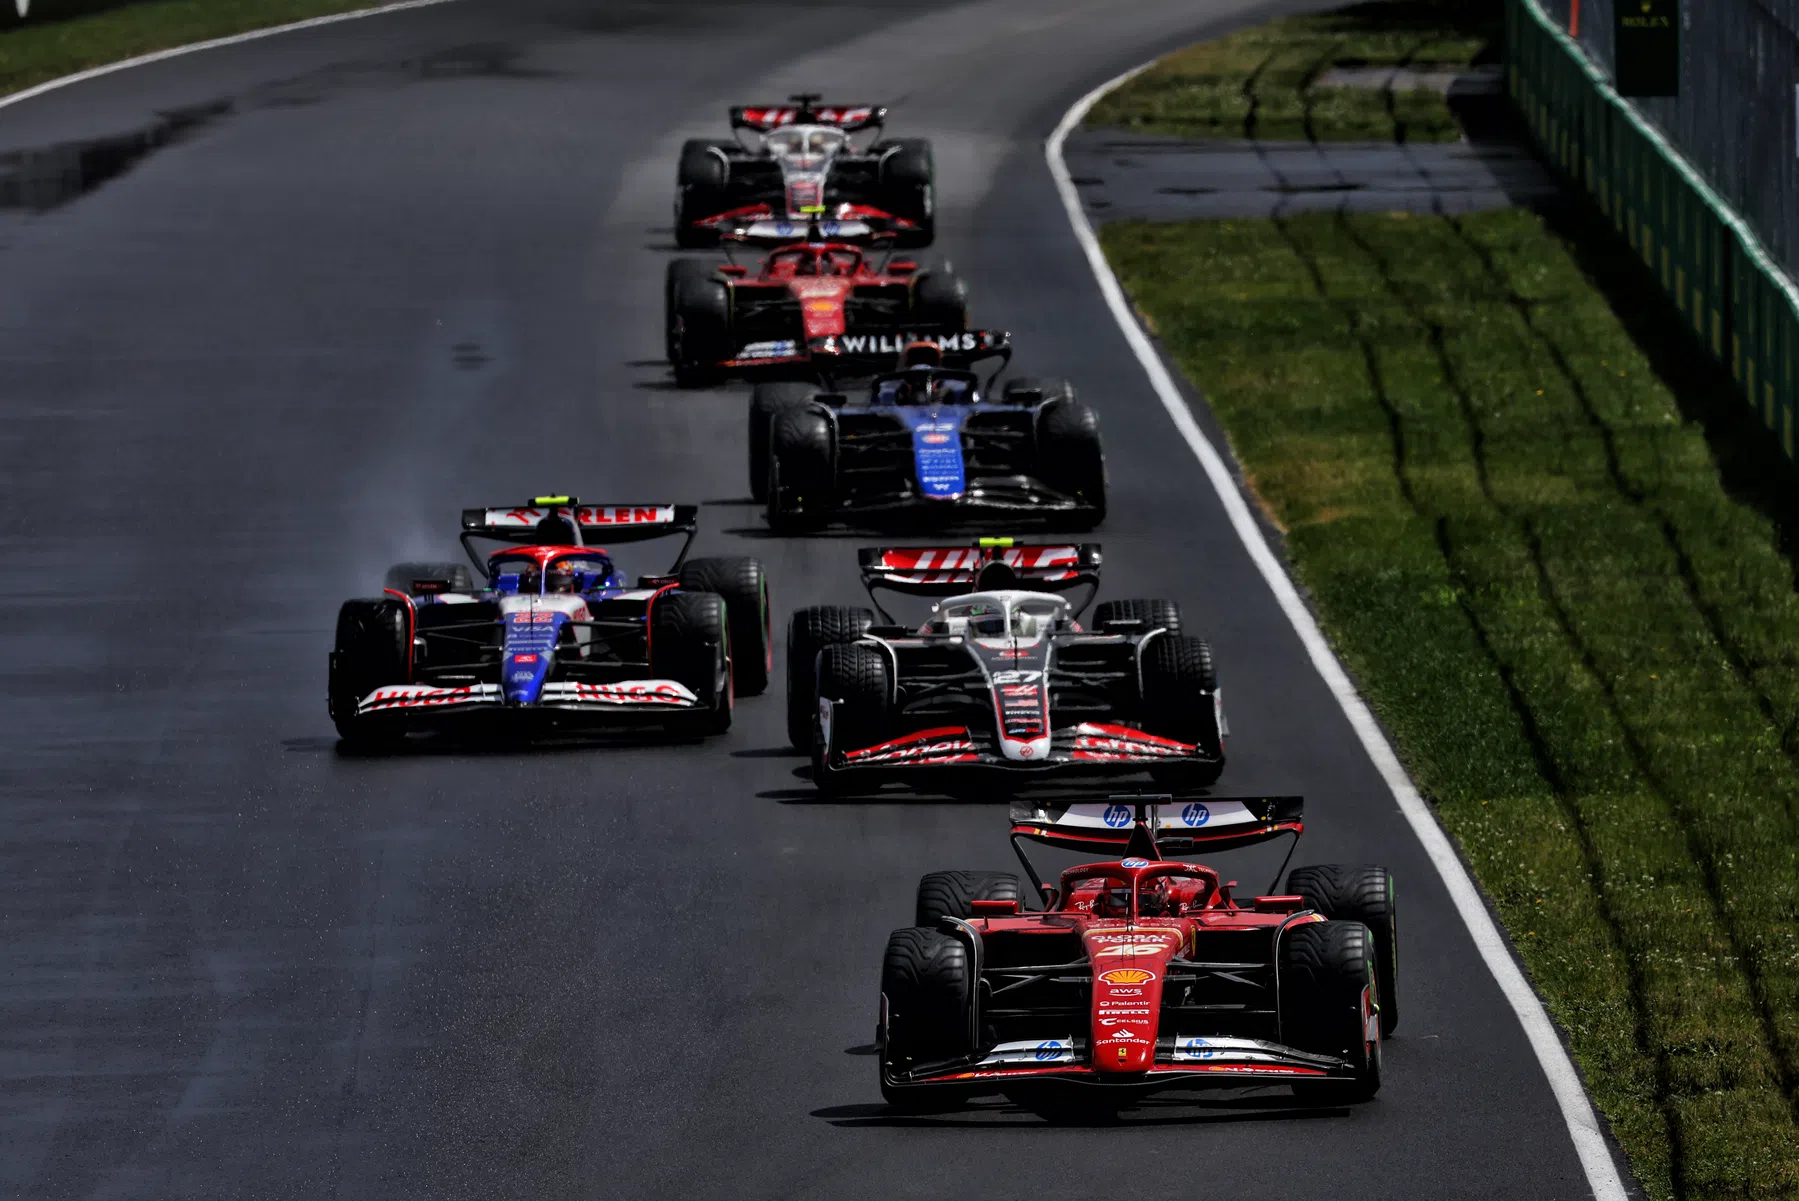 F1-Autos möglicherweise langsamer als F2-Autos in der Saison 2026